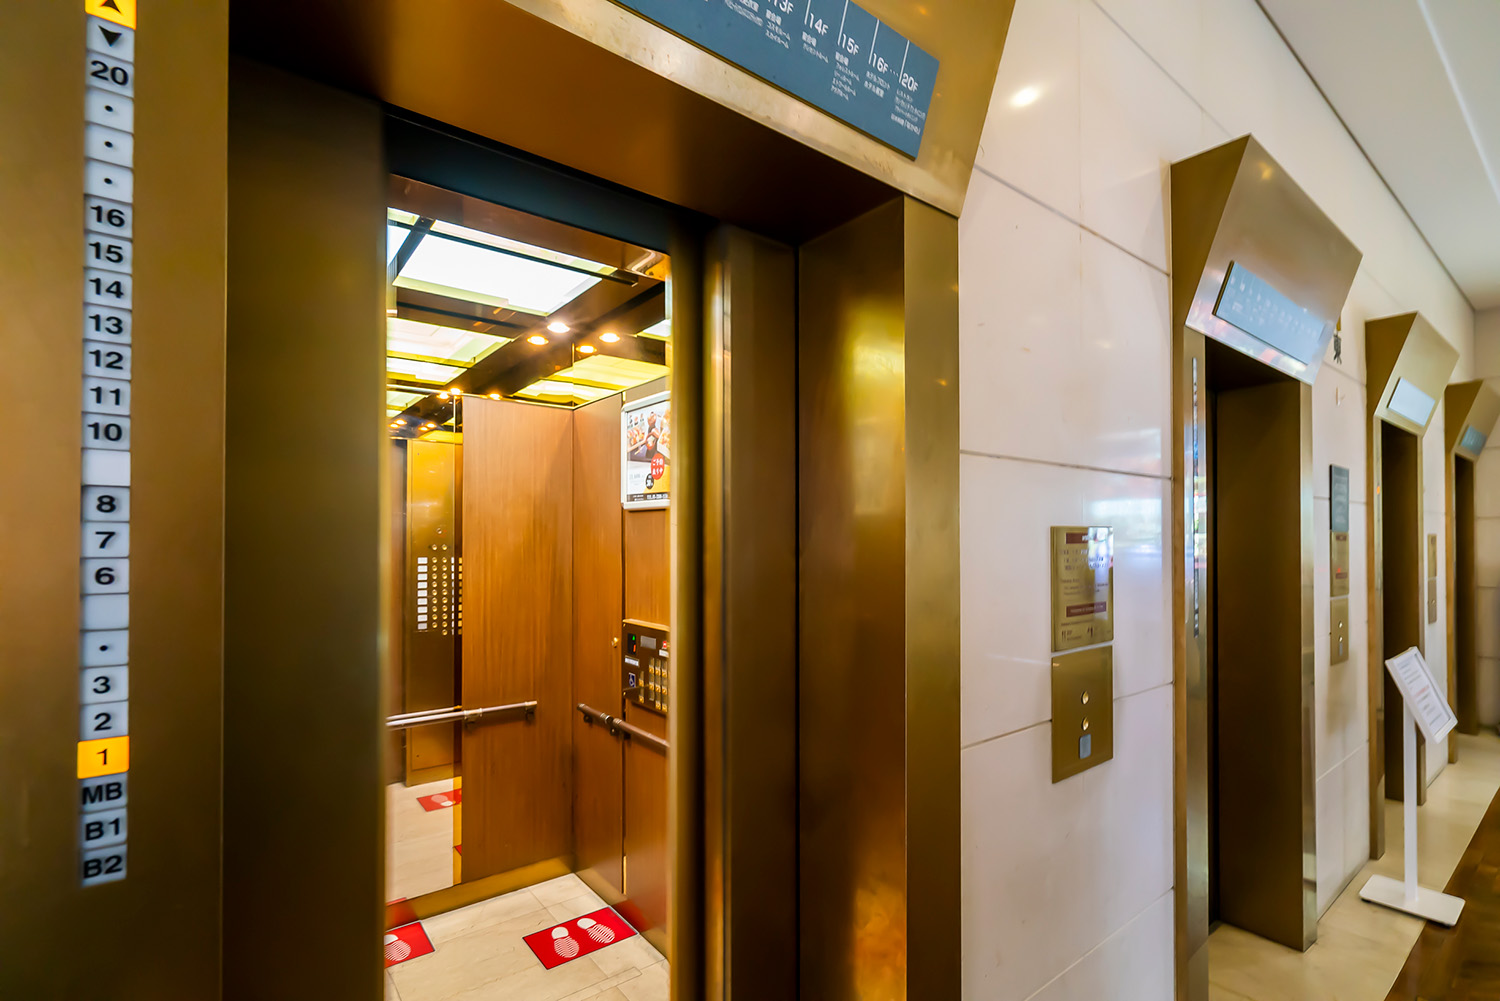 東エレベーターは金色、西エレベーターは銀色。民営化前に化粧直しした。